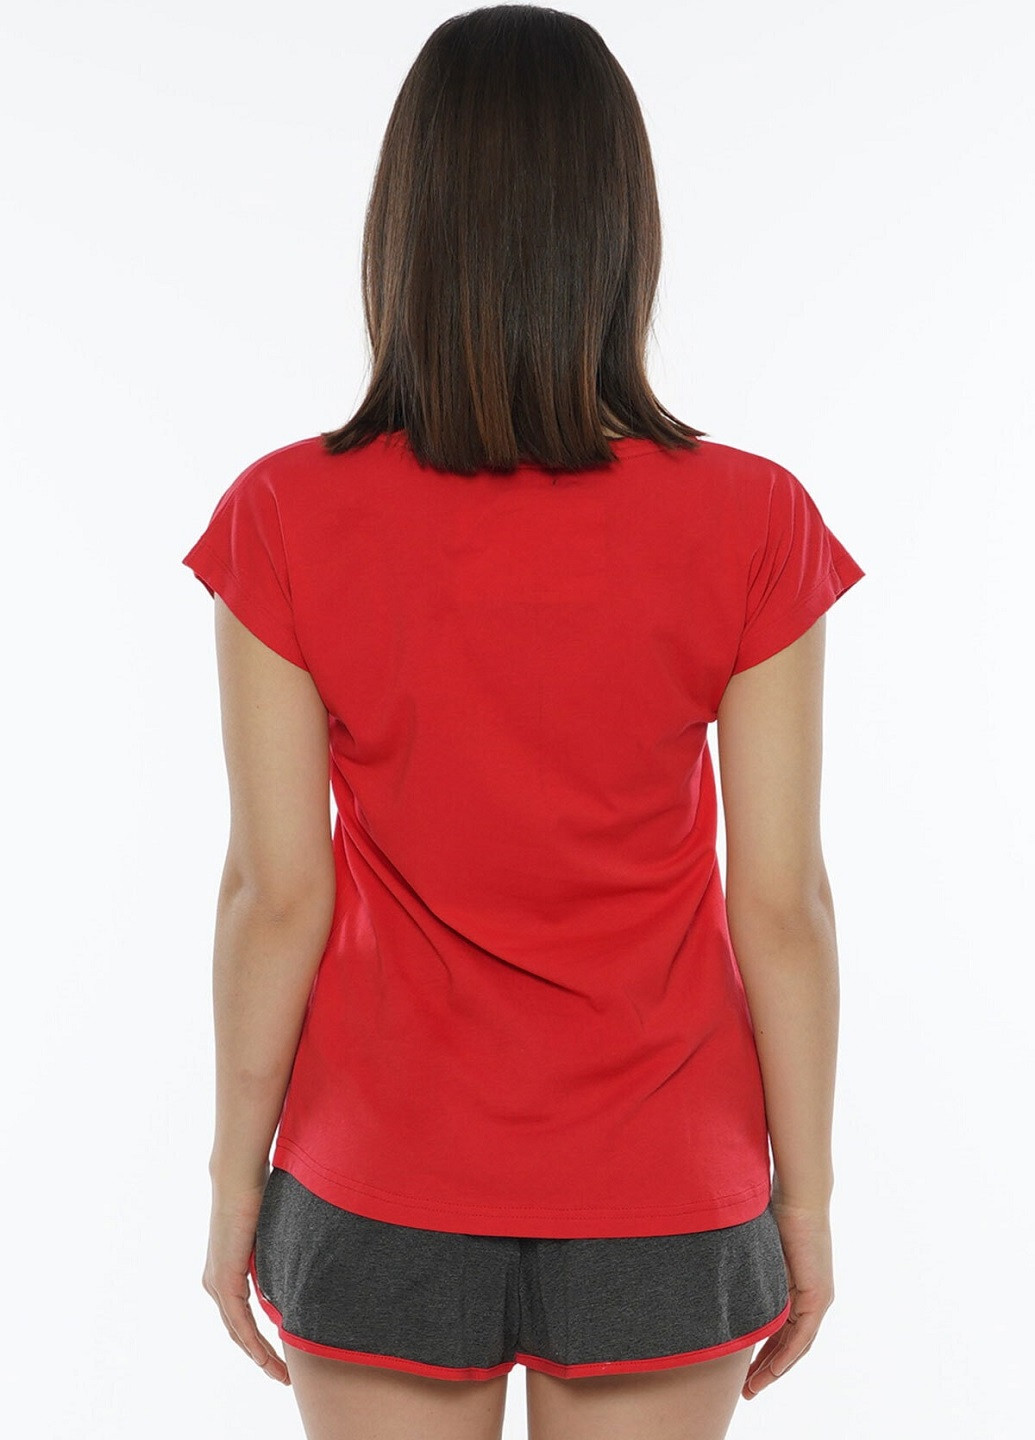 Красная всесезон комплект (футболка, шорты) футболка + шорты Vienetta